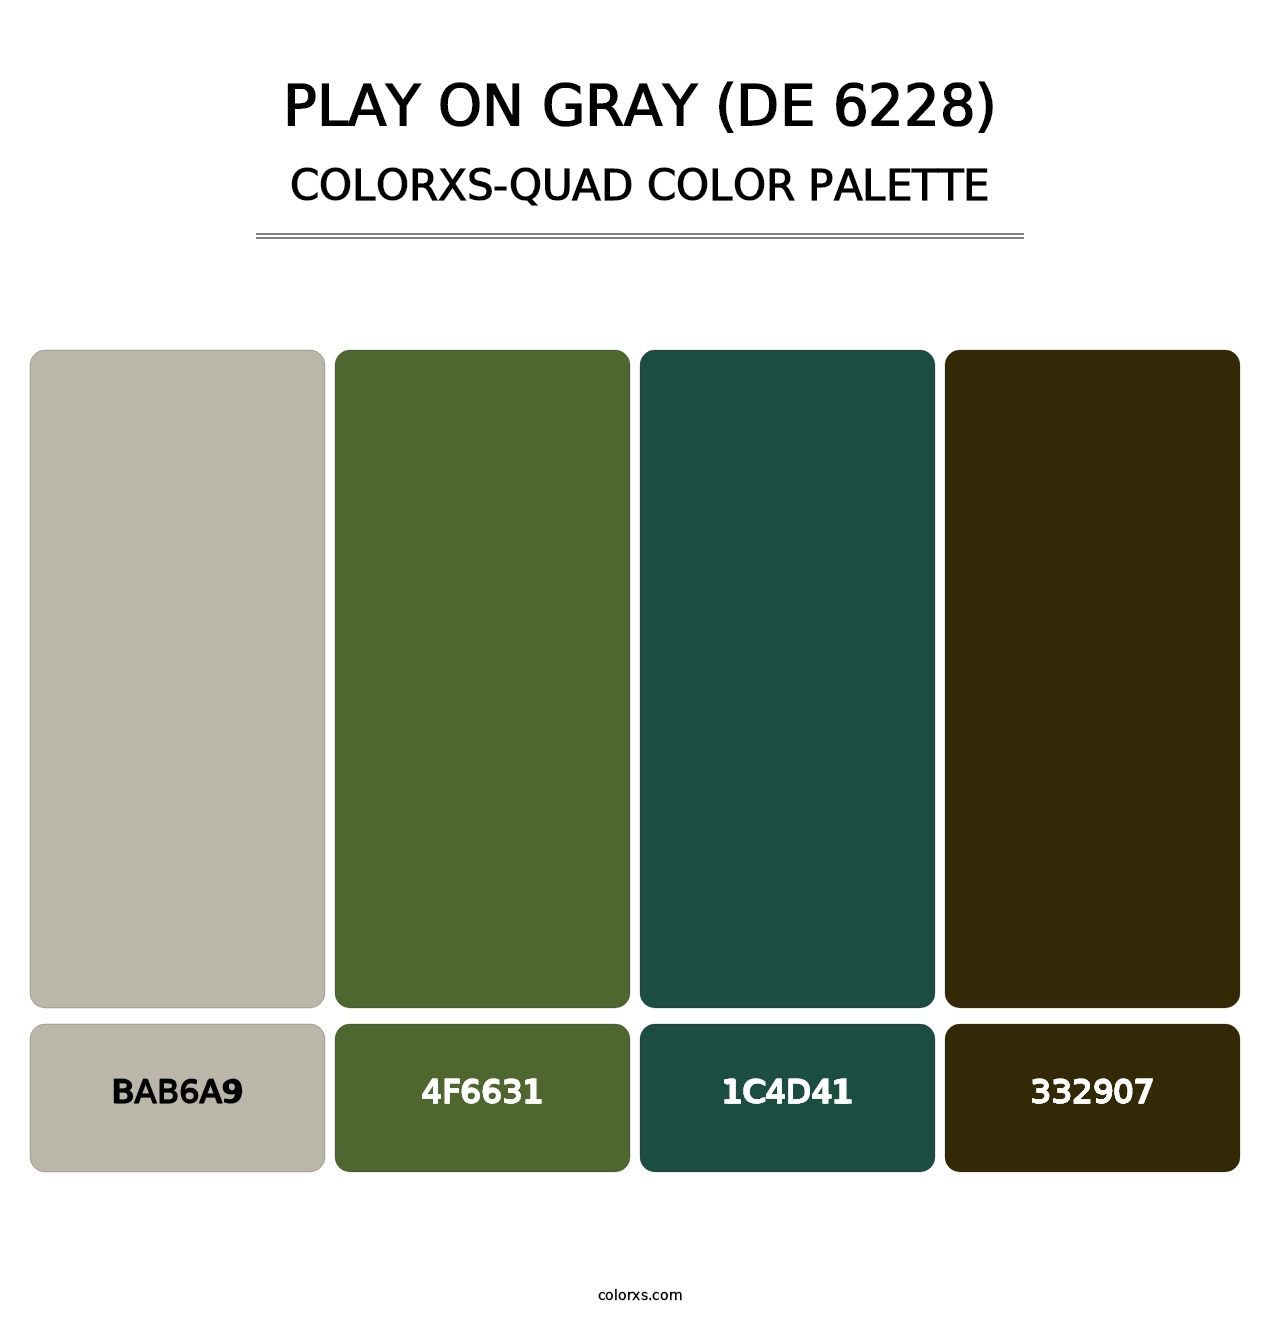 Play on Gray (DE 6228) - Colorxs Quad Palette